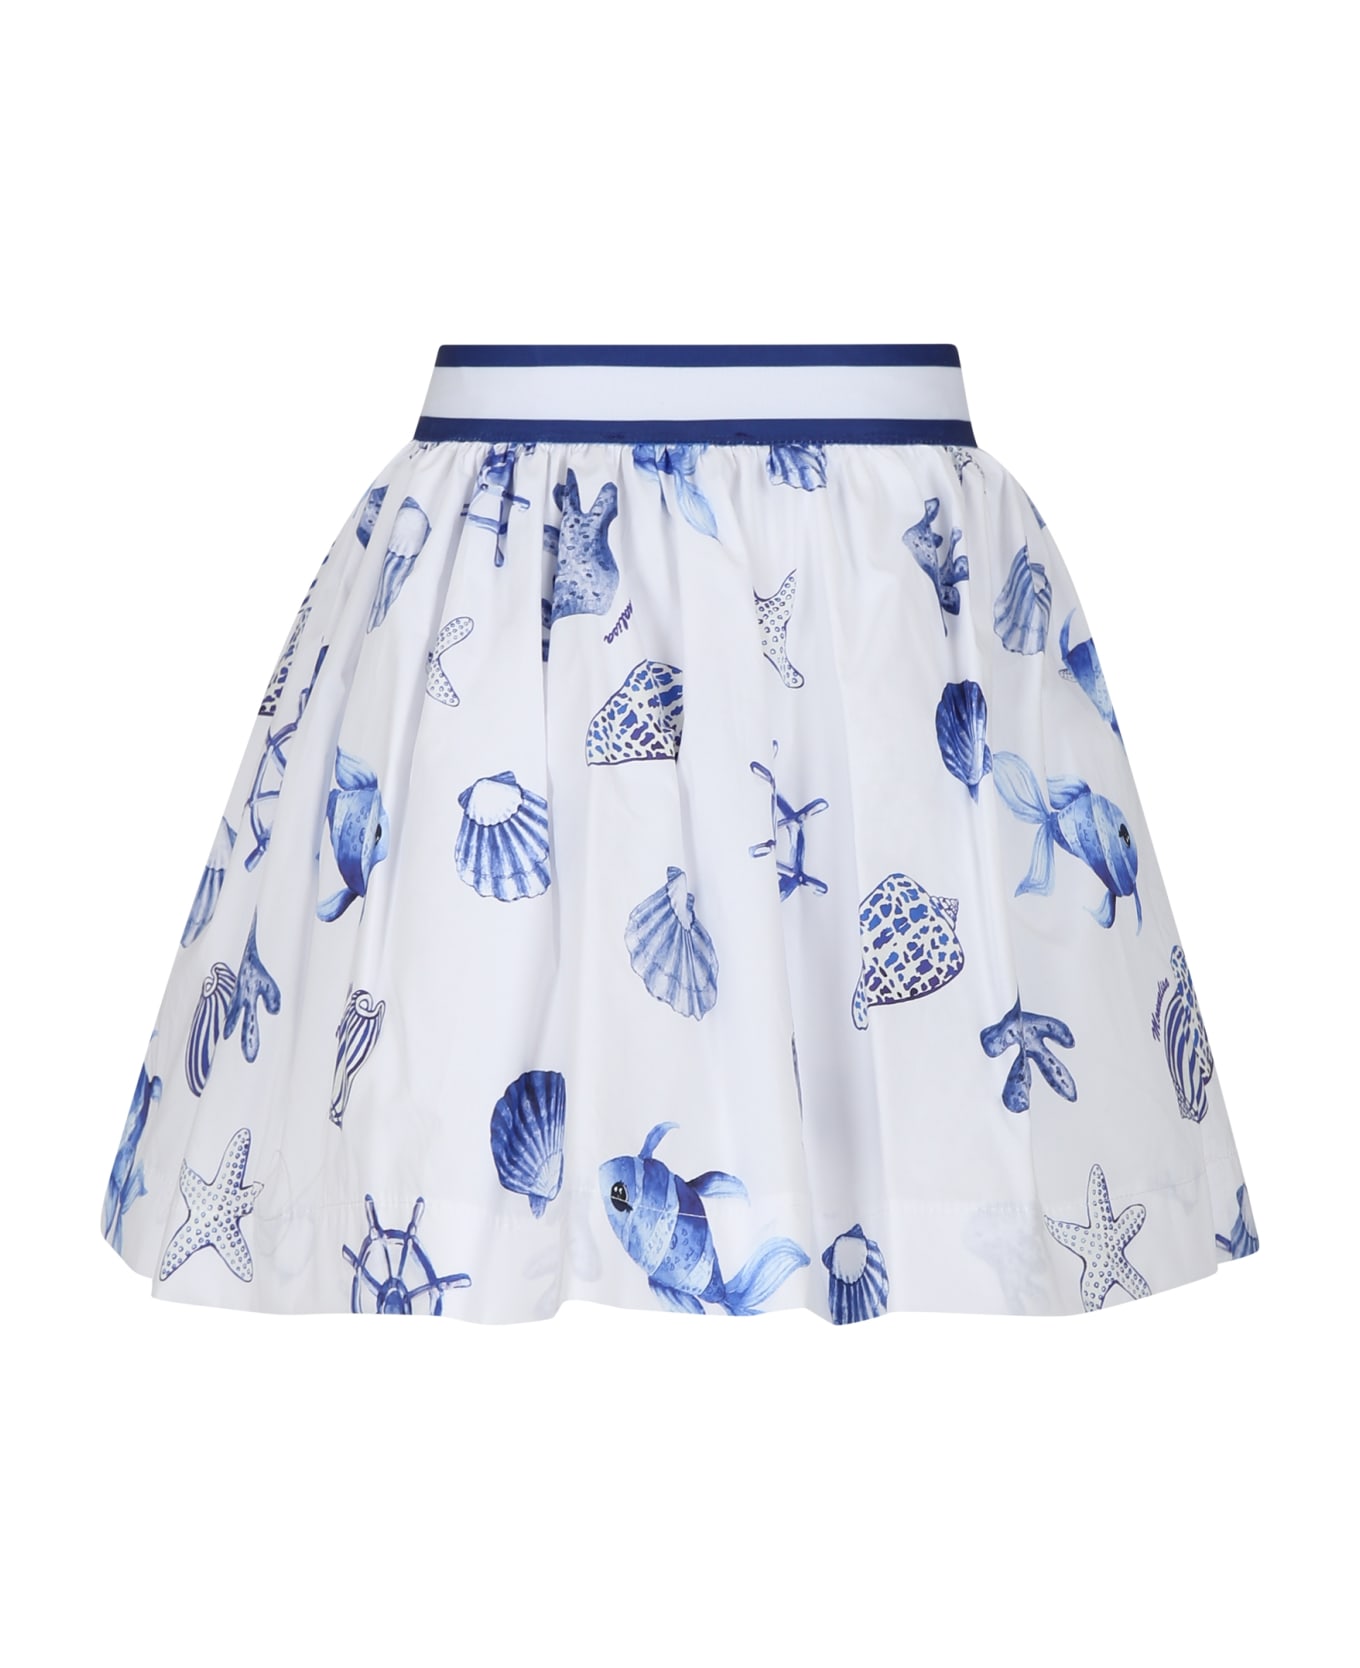 Monnalisa White Skirt For Girl With Shells Print - White